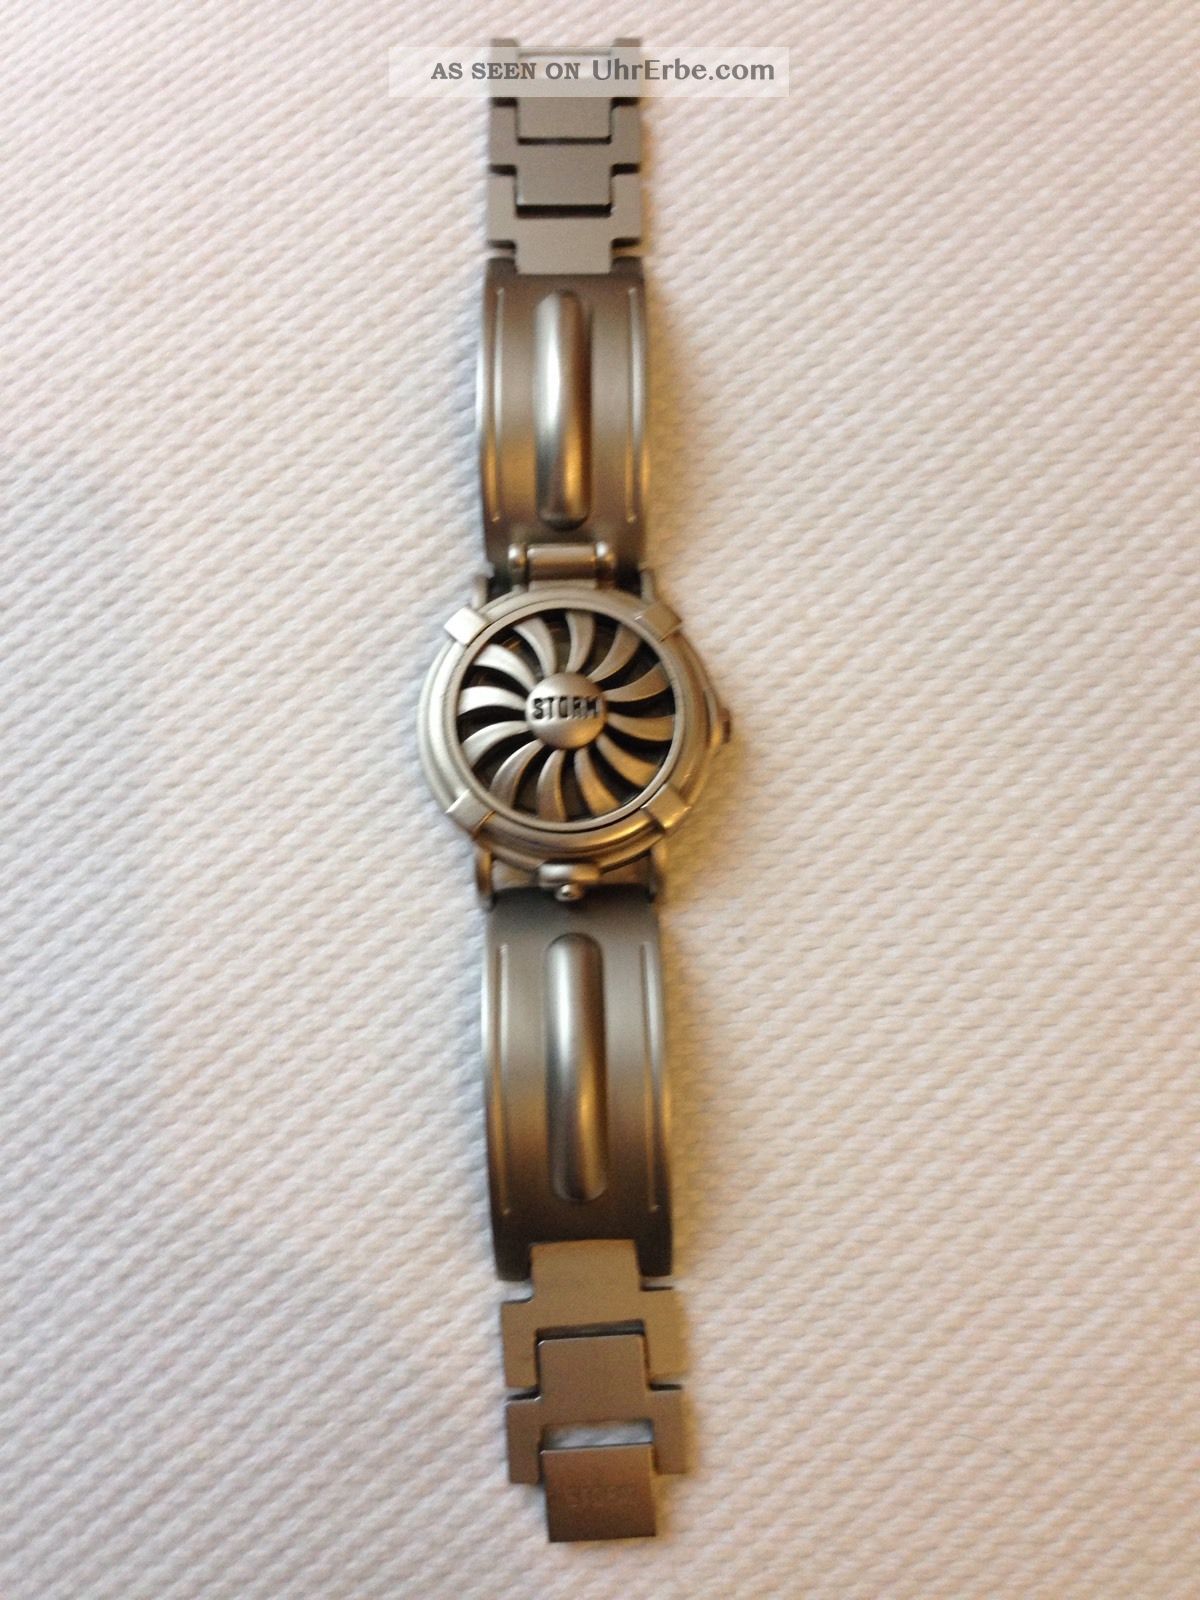 Storm Uhr Watch Modell Turbine Rare Collector 80er 90er Wie Armbanduhren Bild